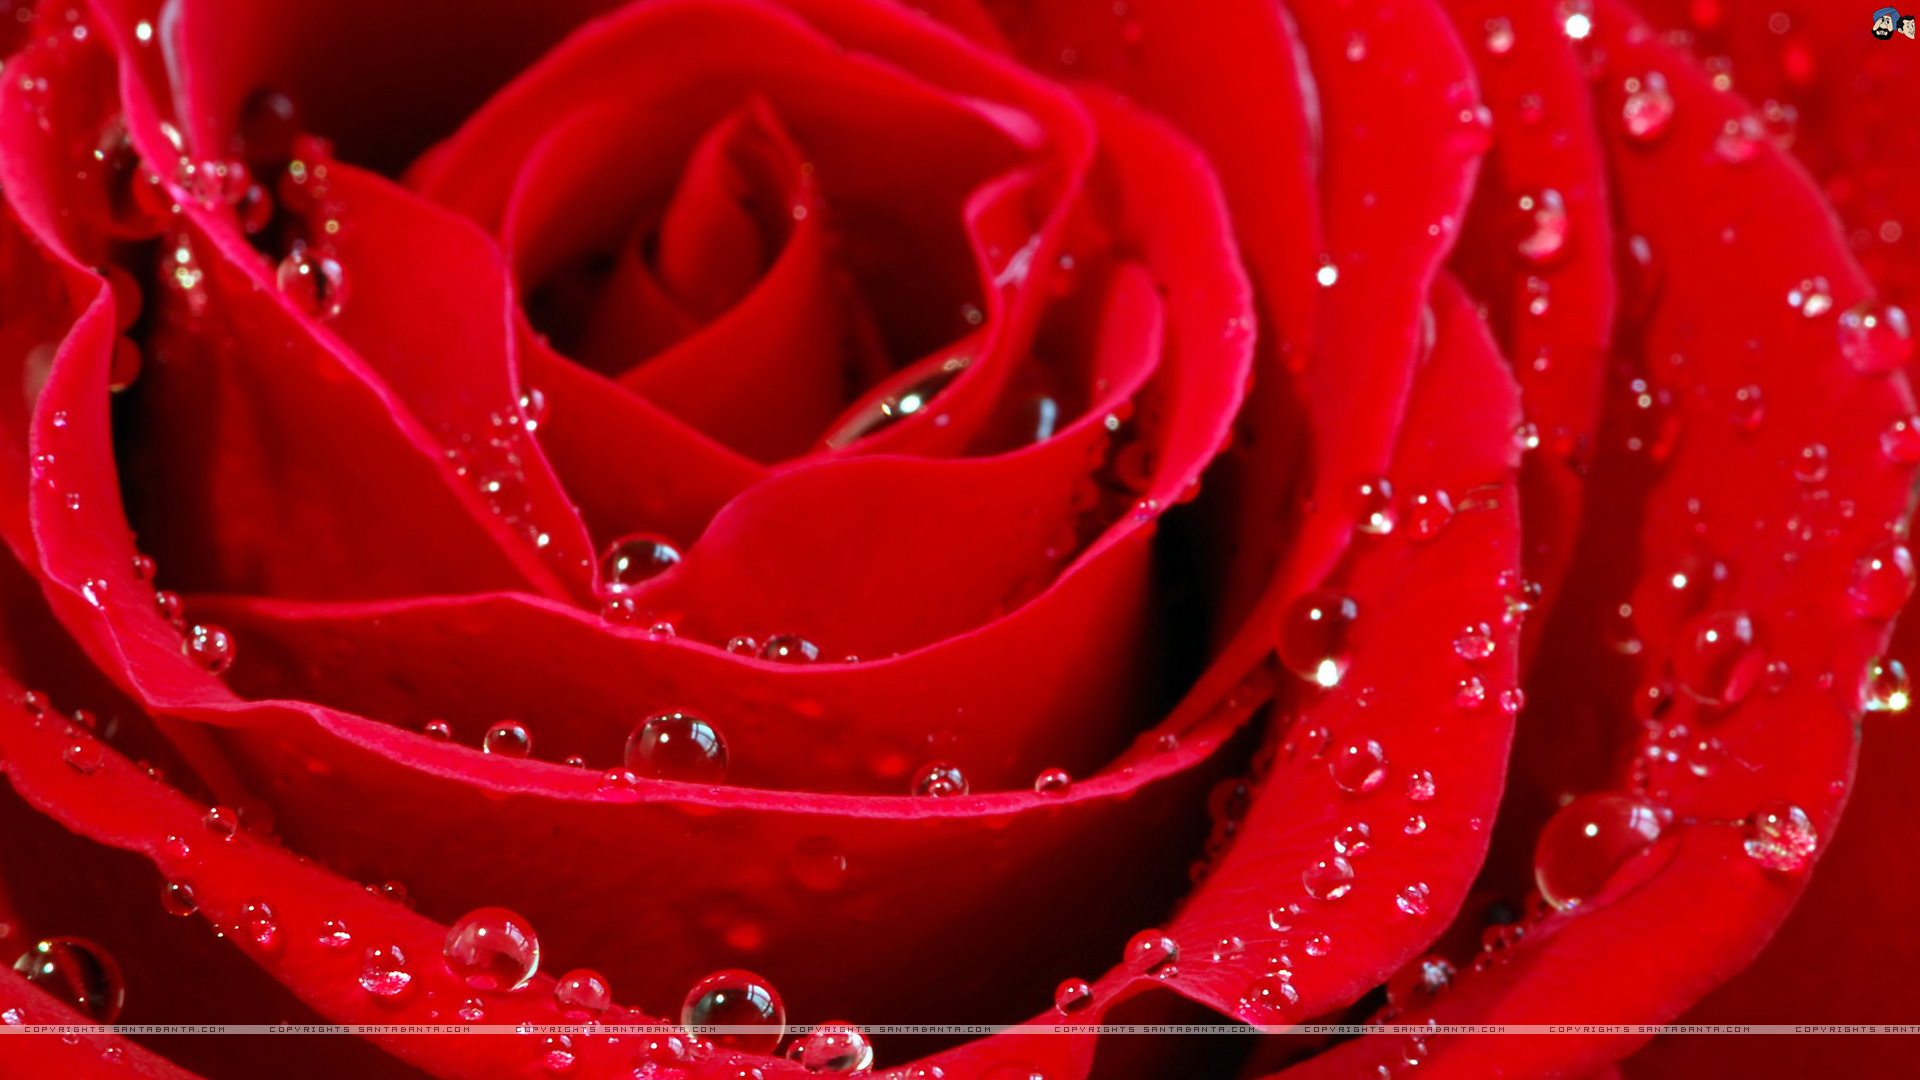 49+] Red Rose Wallpaper Free Download - WallpaperSafari